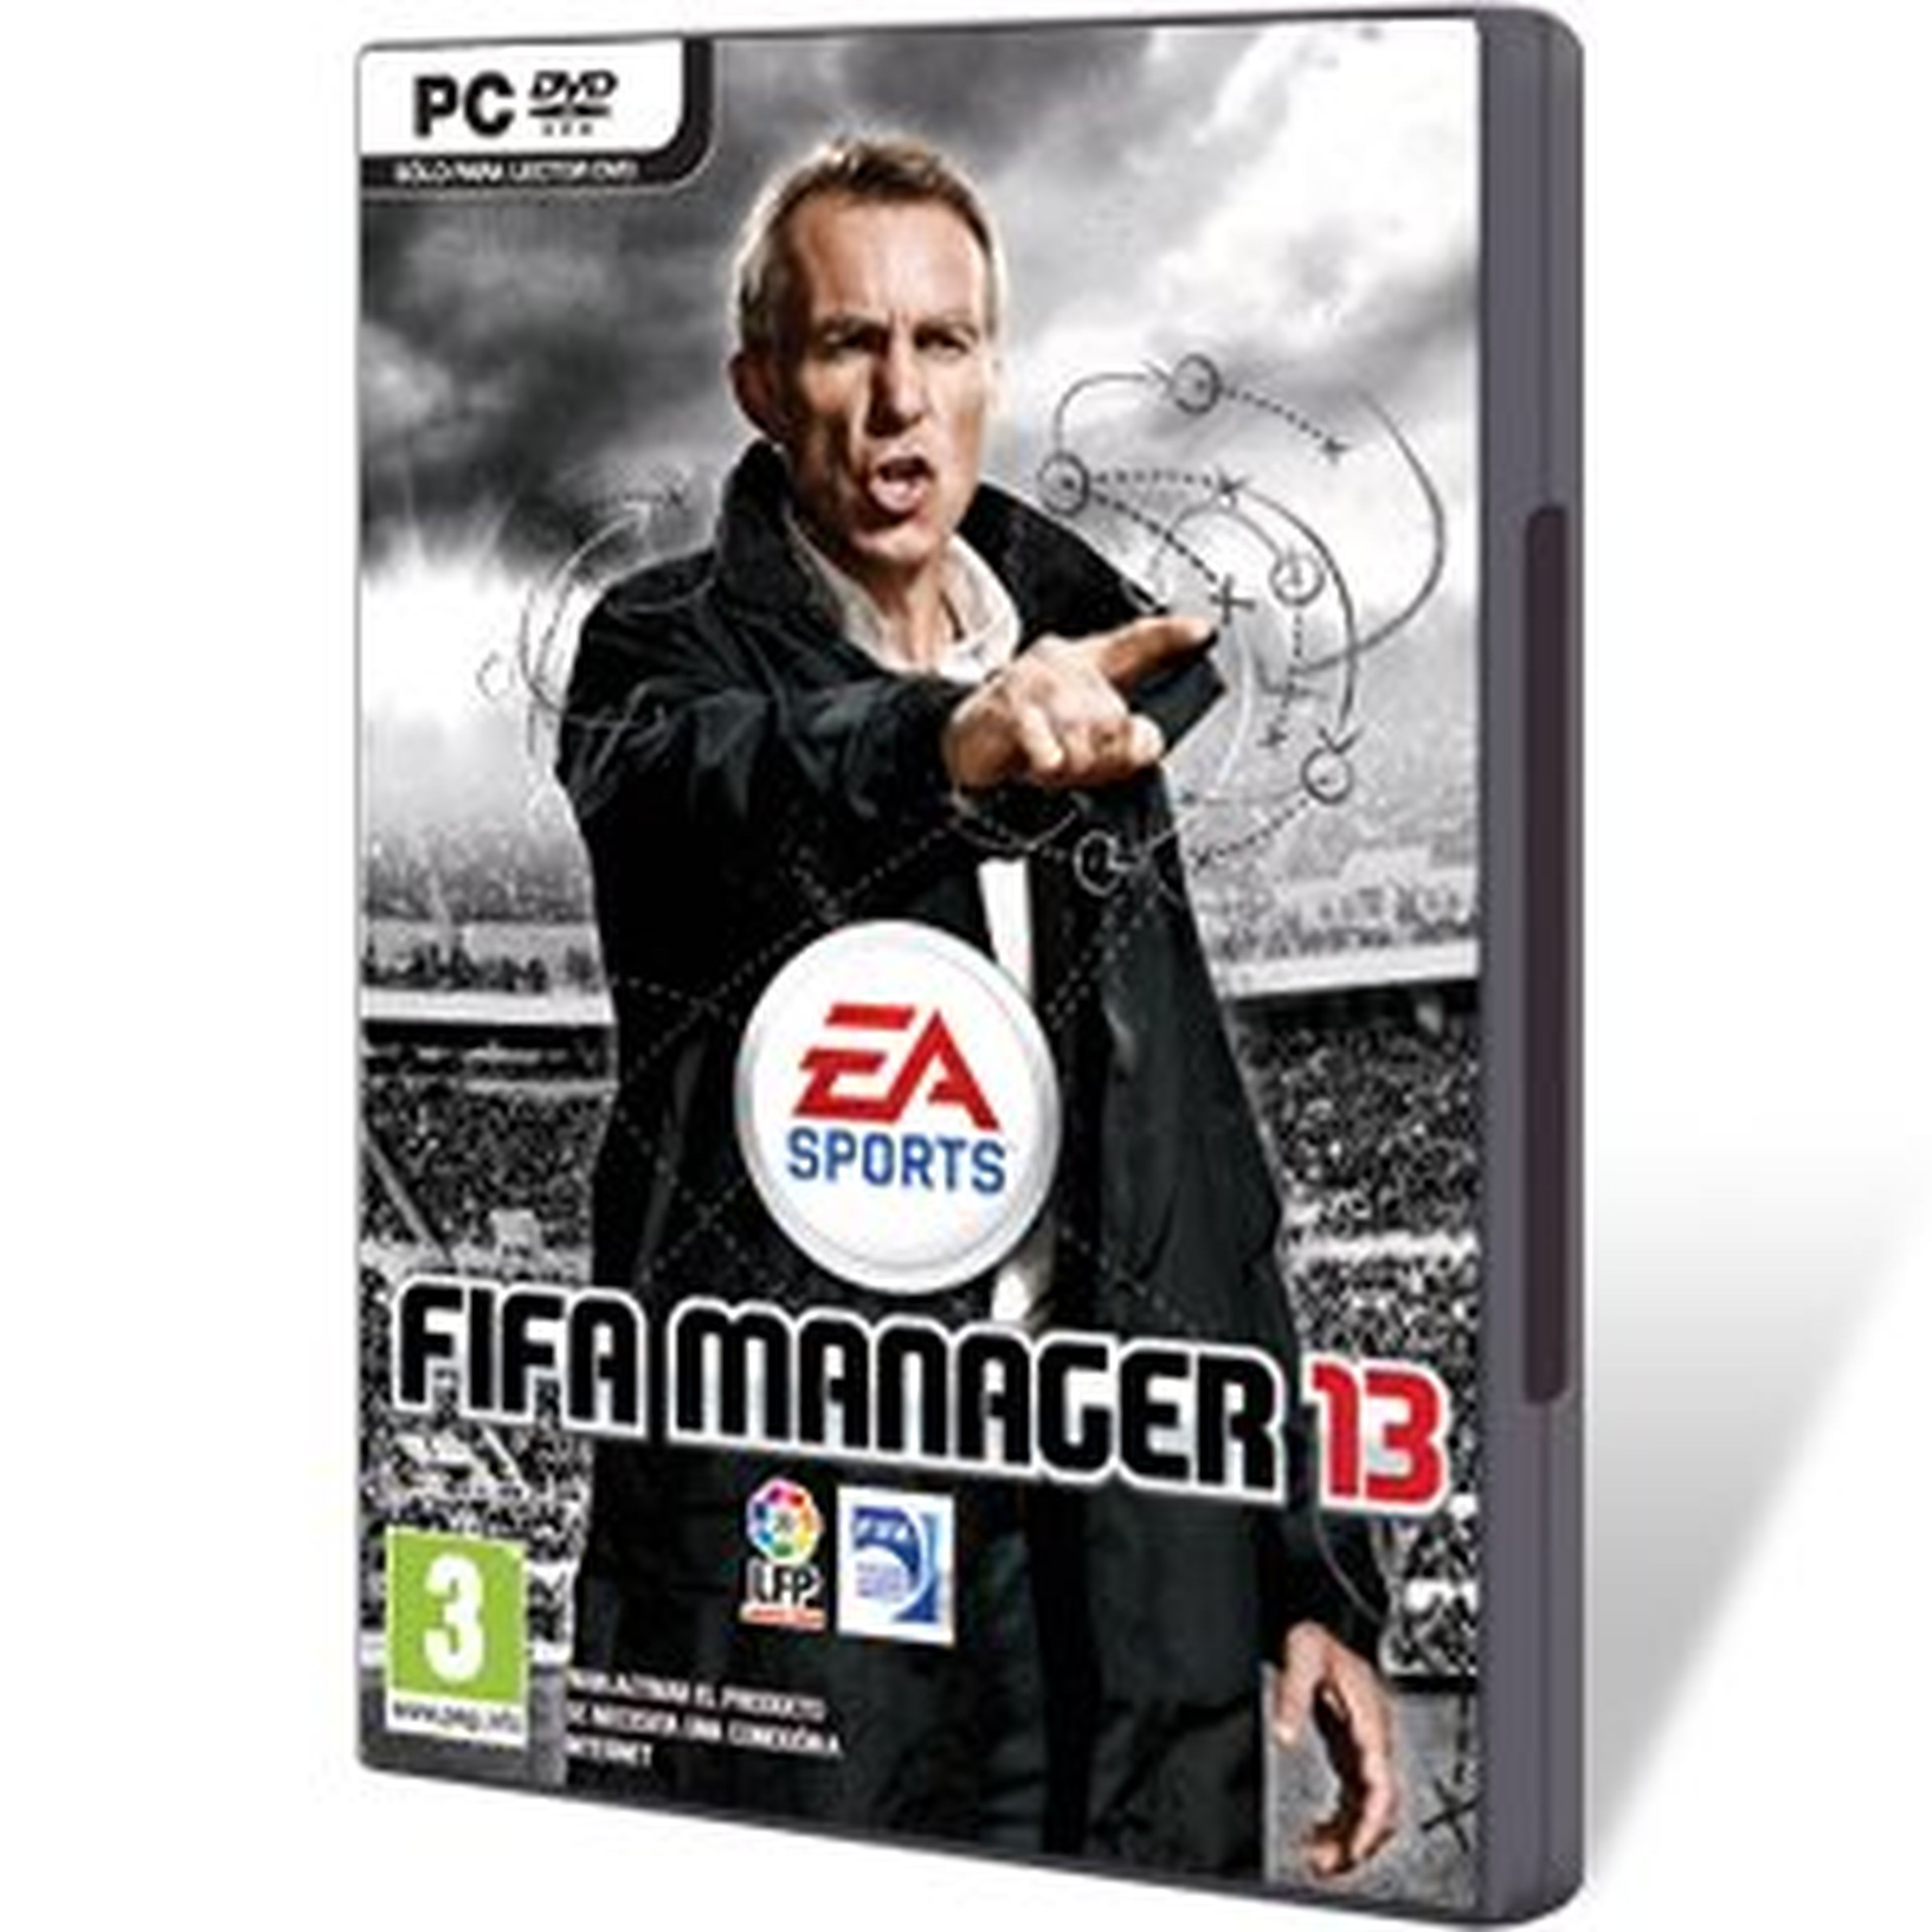 FIFA Manager 13 para PC